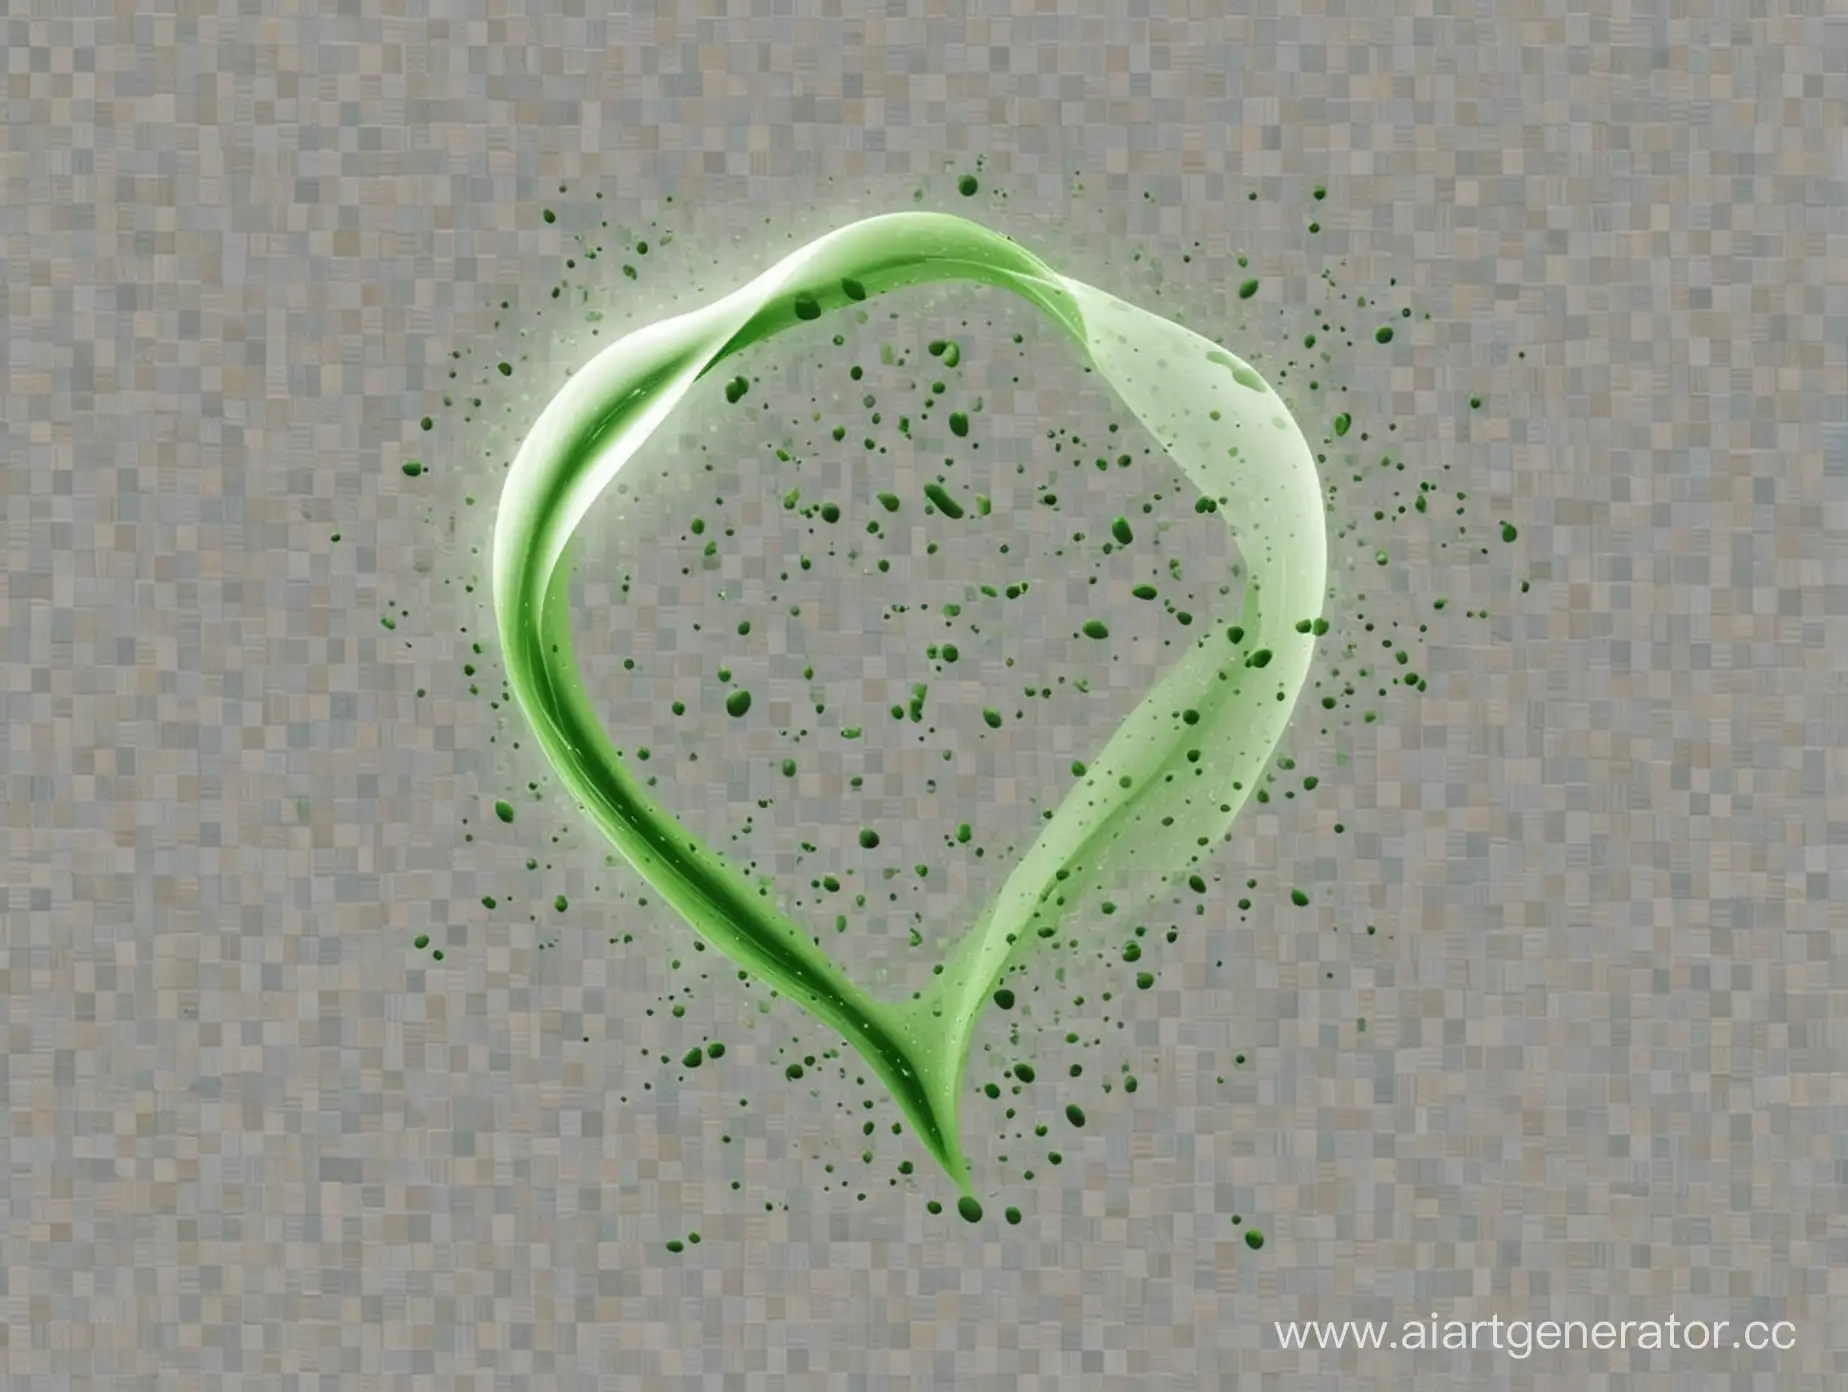 форма зеленого цвета, на прозрачном фоне, как пятно, с мелкими цветными деталями